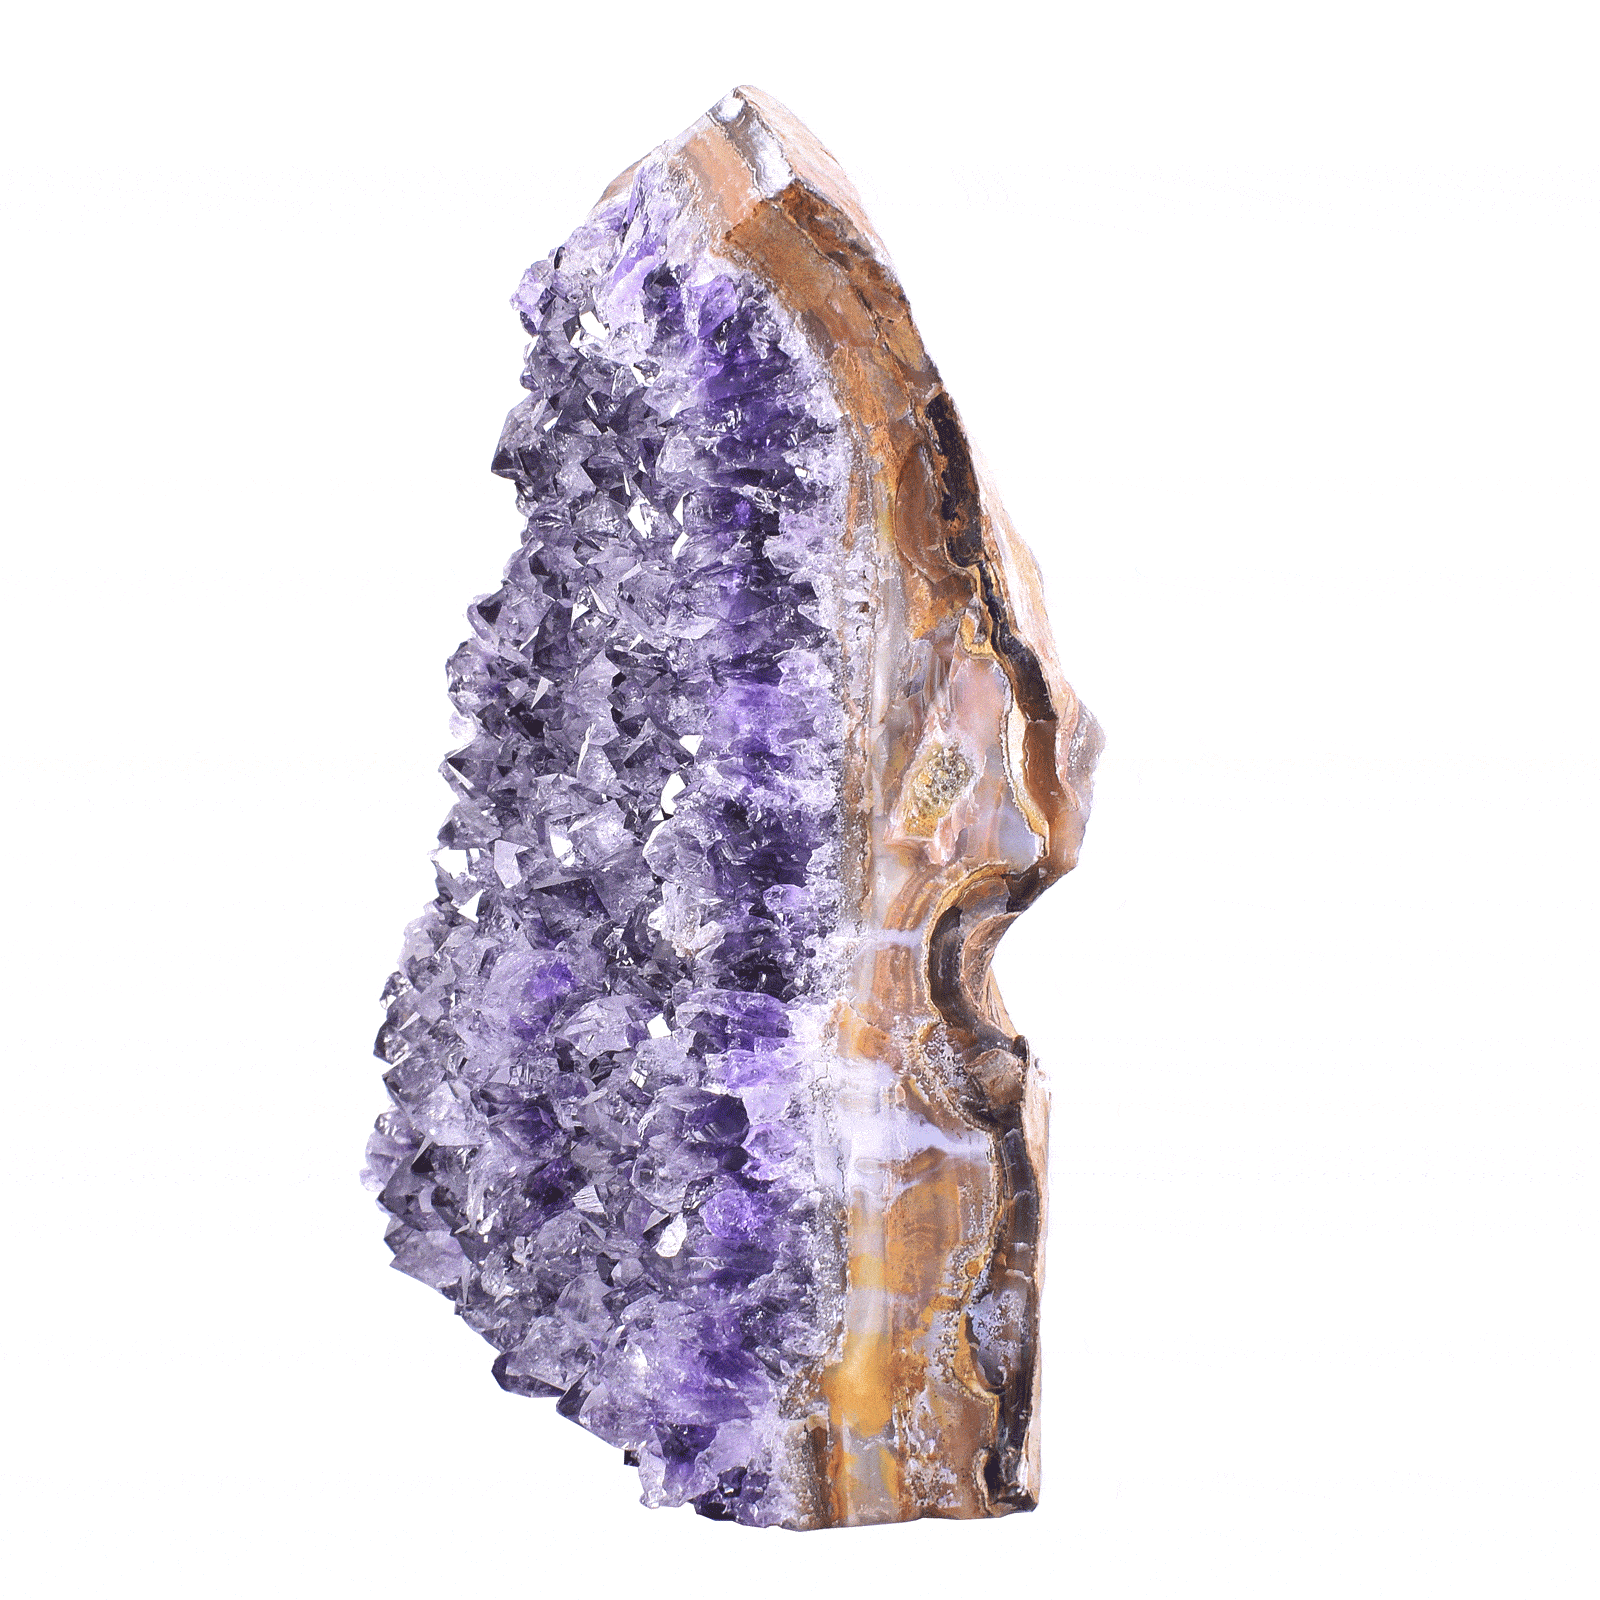 Ακατέργαστο κομμάτι φυσικής πέτρας Αμεθύστου, ύψους 15cm. Αγοράστε online shop.